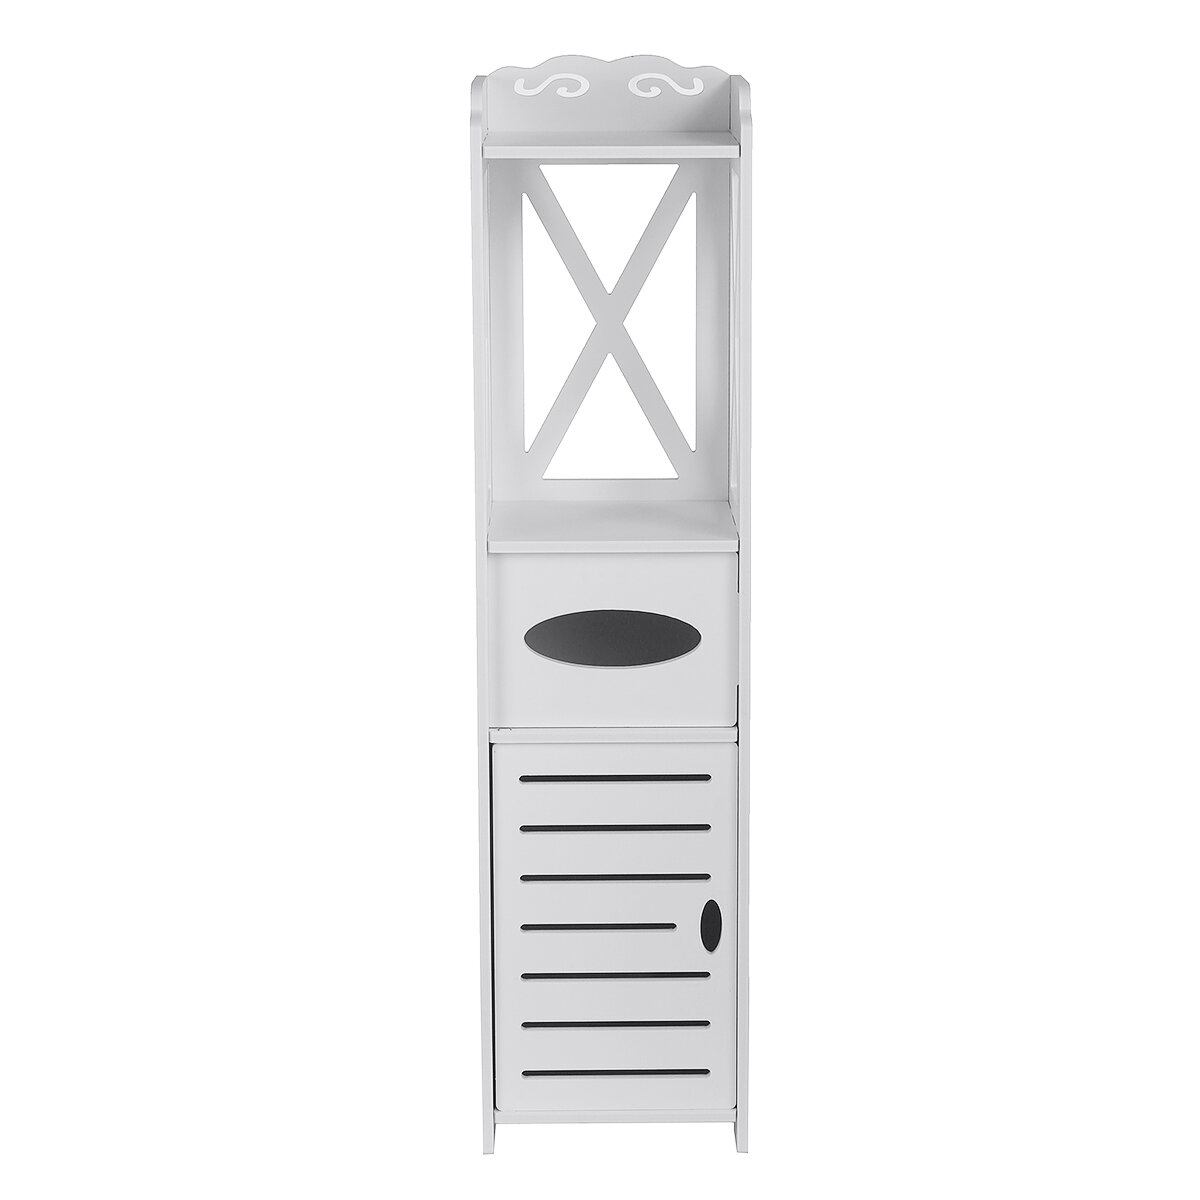 

White Wooden Bathroom Storage Cabinet Shelf Slim Cupboard Unit For Kitchen Bathroom Daily Accessories Storage